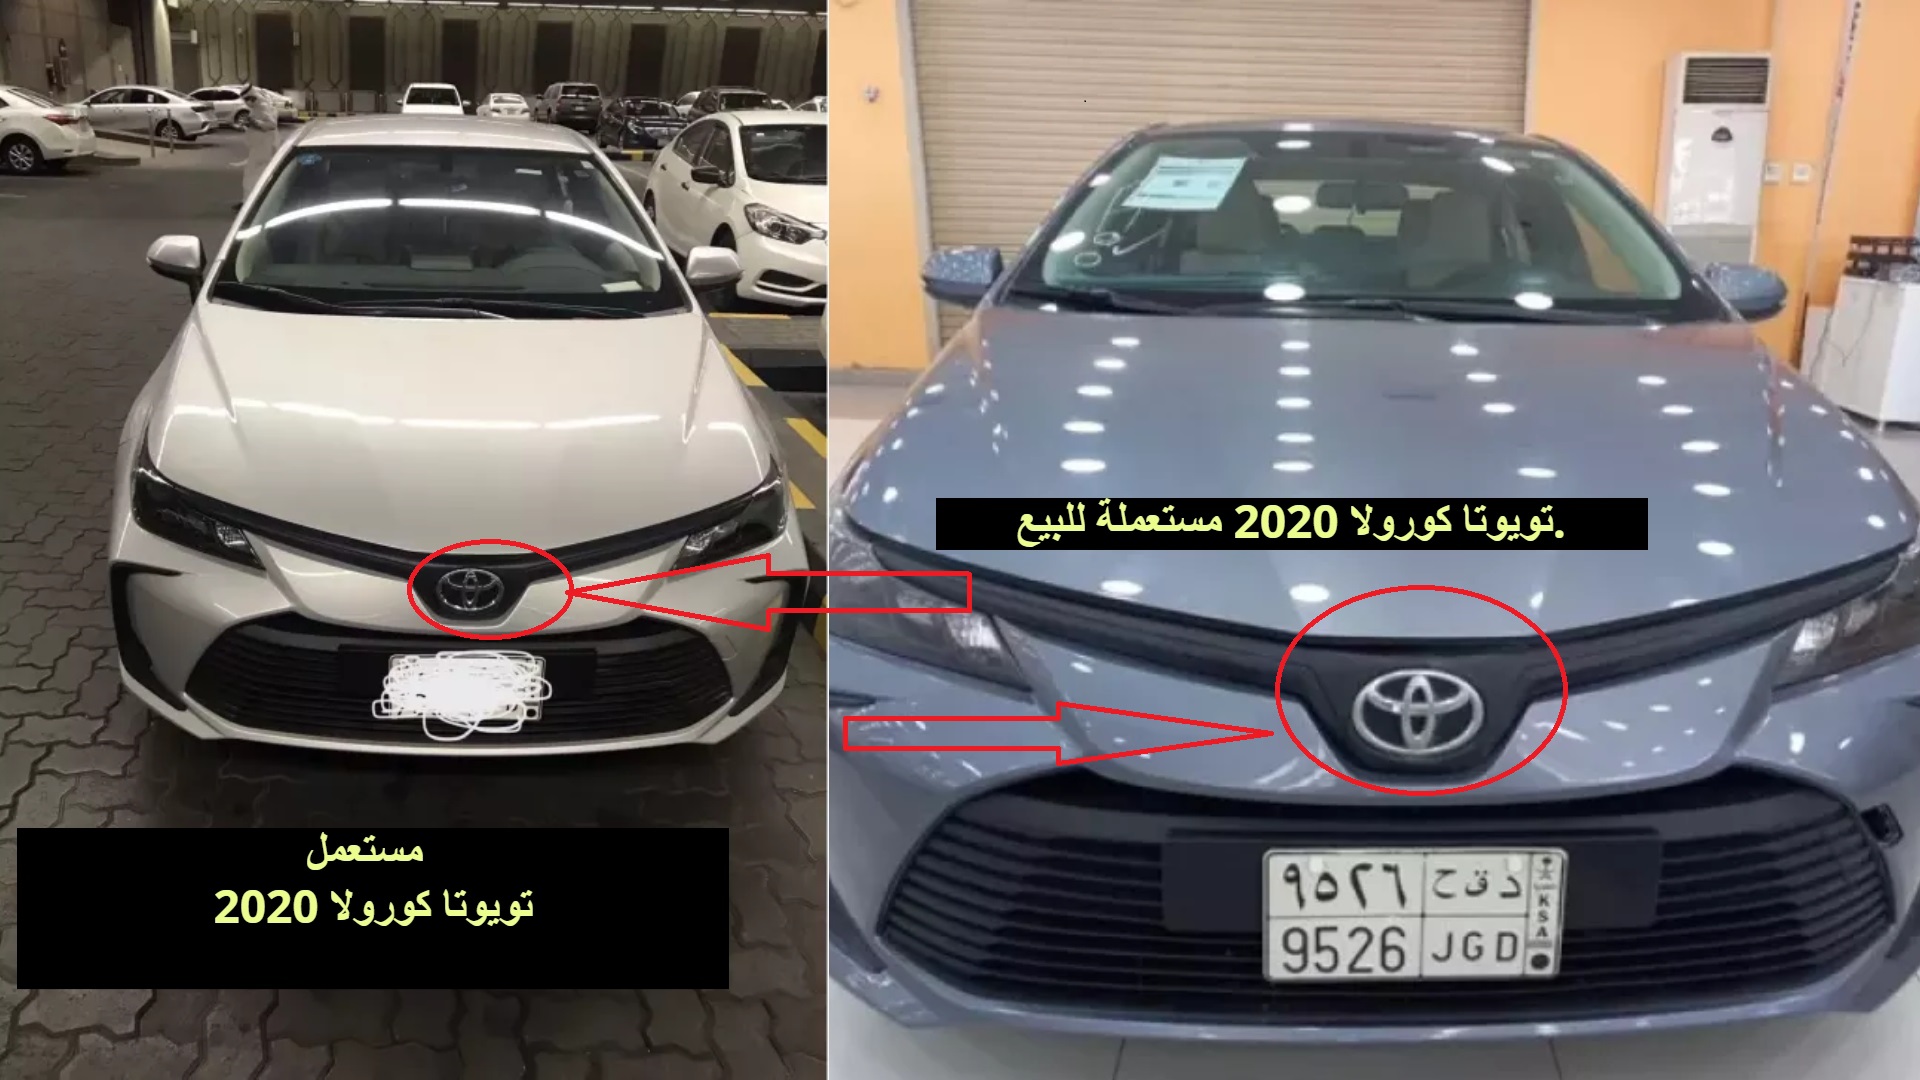 تويوتا وهيونداي مستعملة في السعودية سيارات بسعر مريح ومناسب للراتب